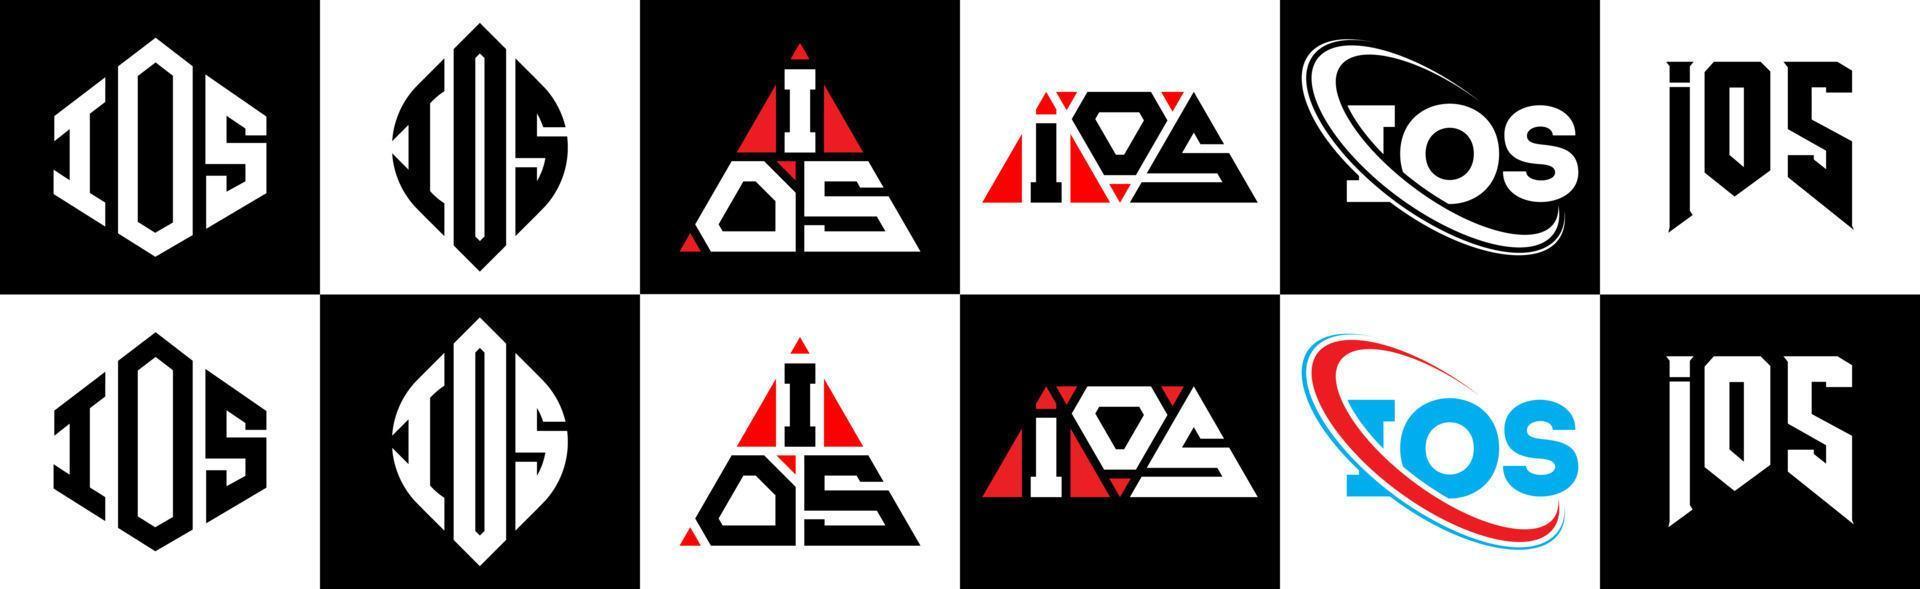 ios lettera logo design nel sei stile. ios poligono, cerchio, triangolo, esagono, piatto e semplice stile con nero e bianca colore variazione lettera logo impostato nel uno tavola da disegno. ios minimalista e classico logo vettore